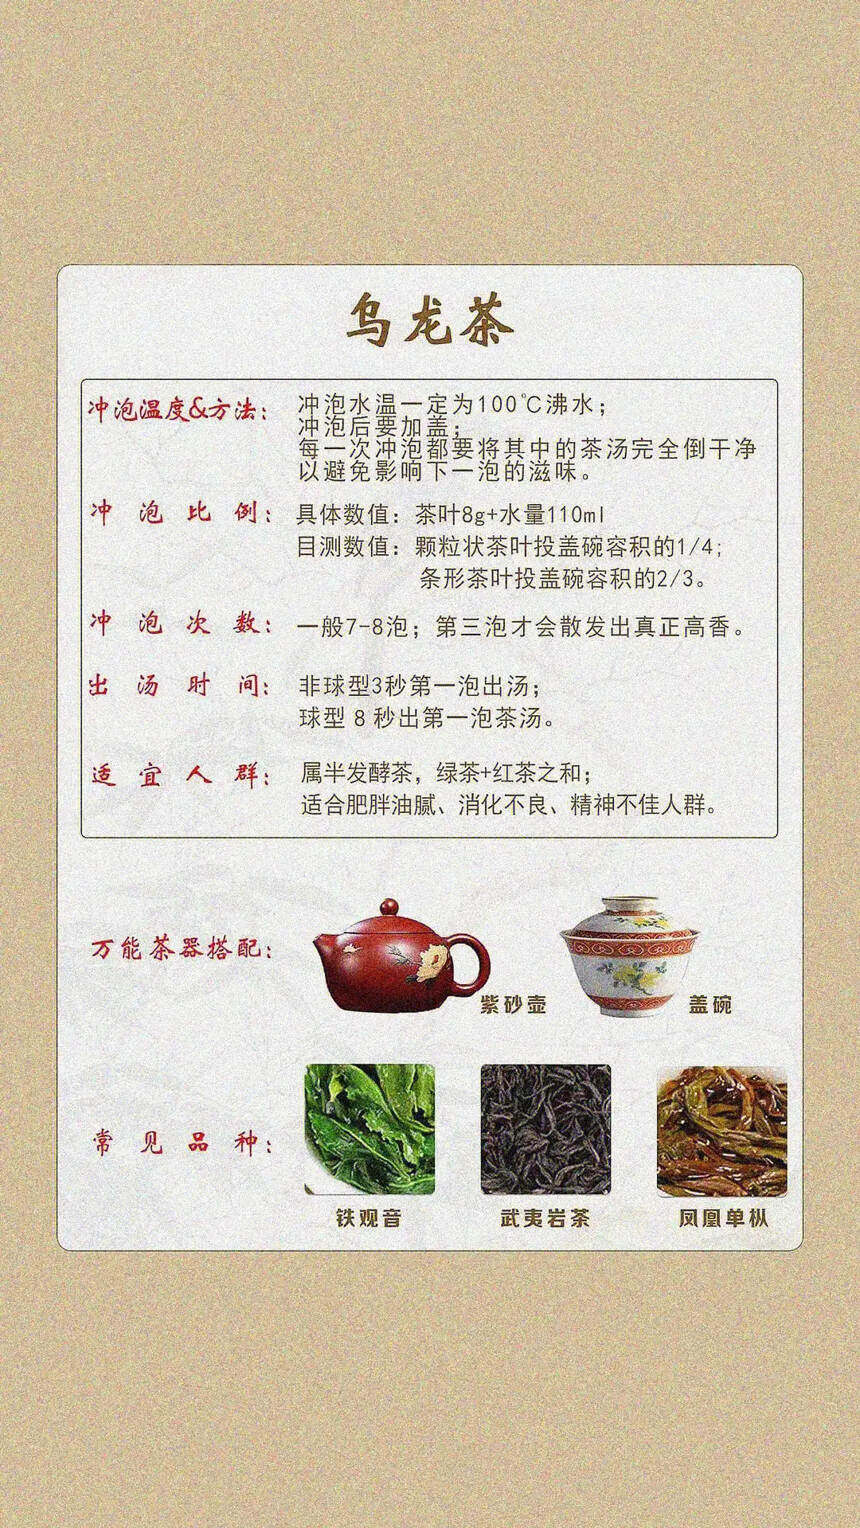 万能的泡茶公式，简单易懂#中国六大茶类# #茶文化#